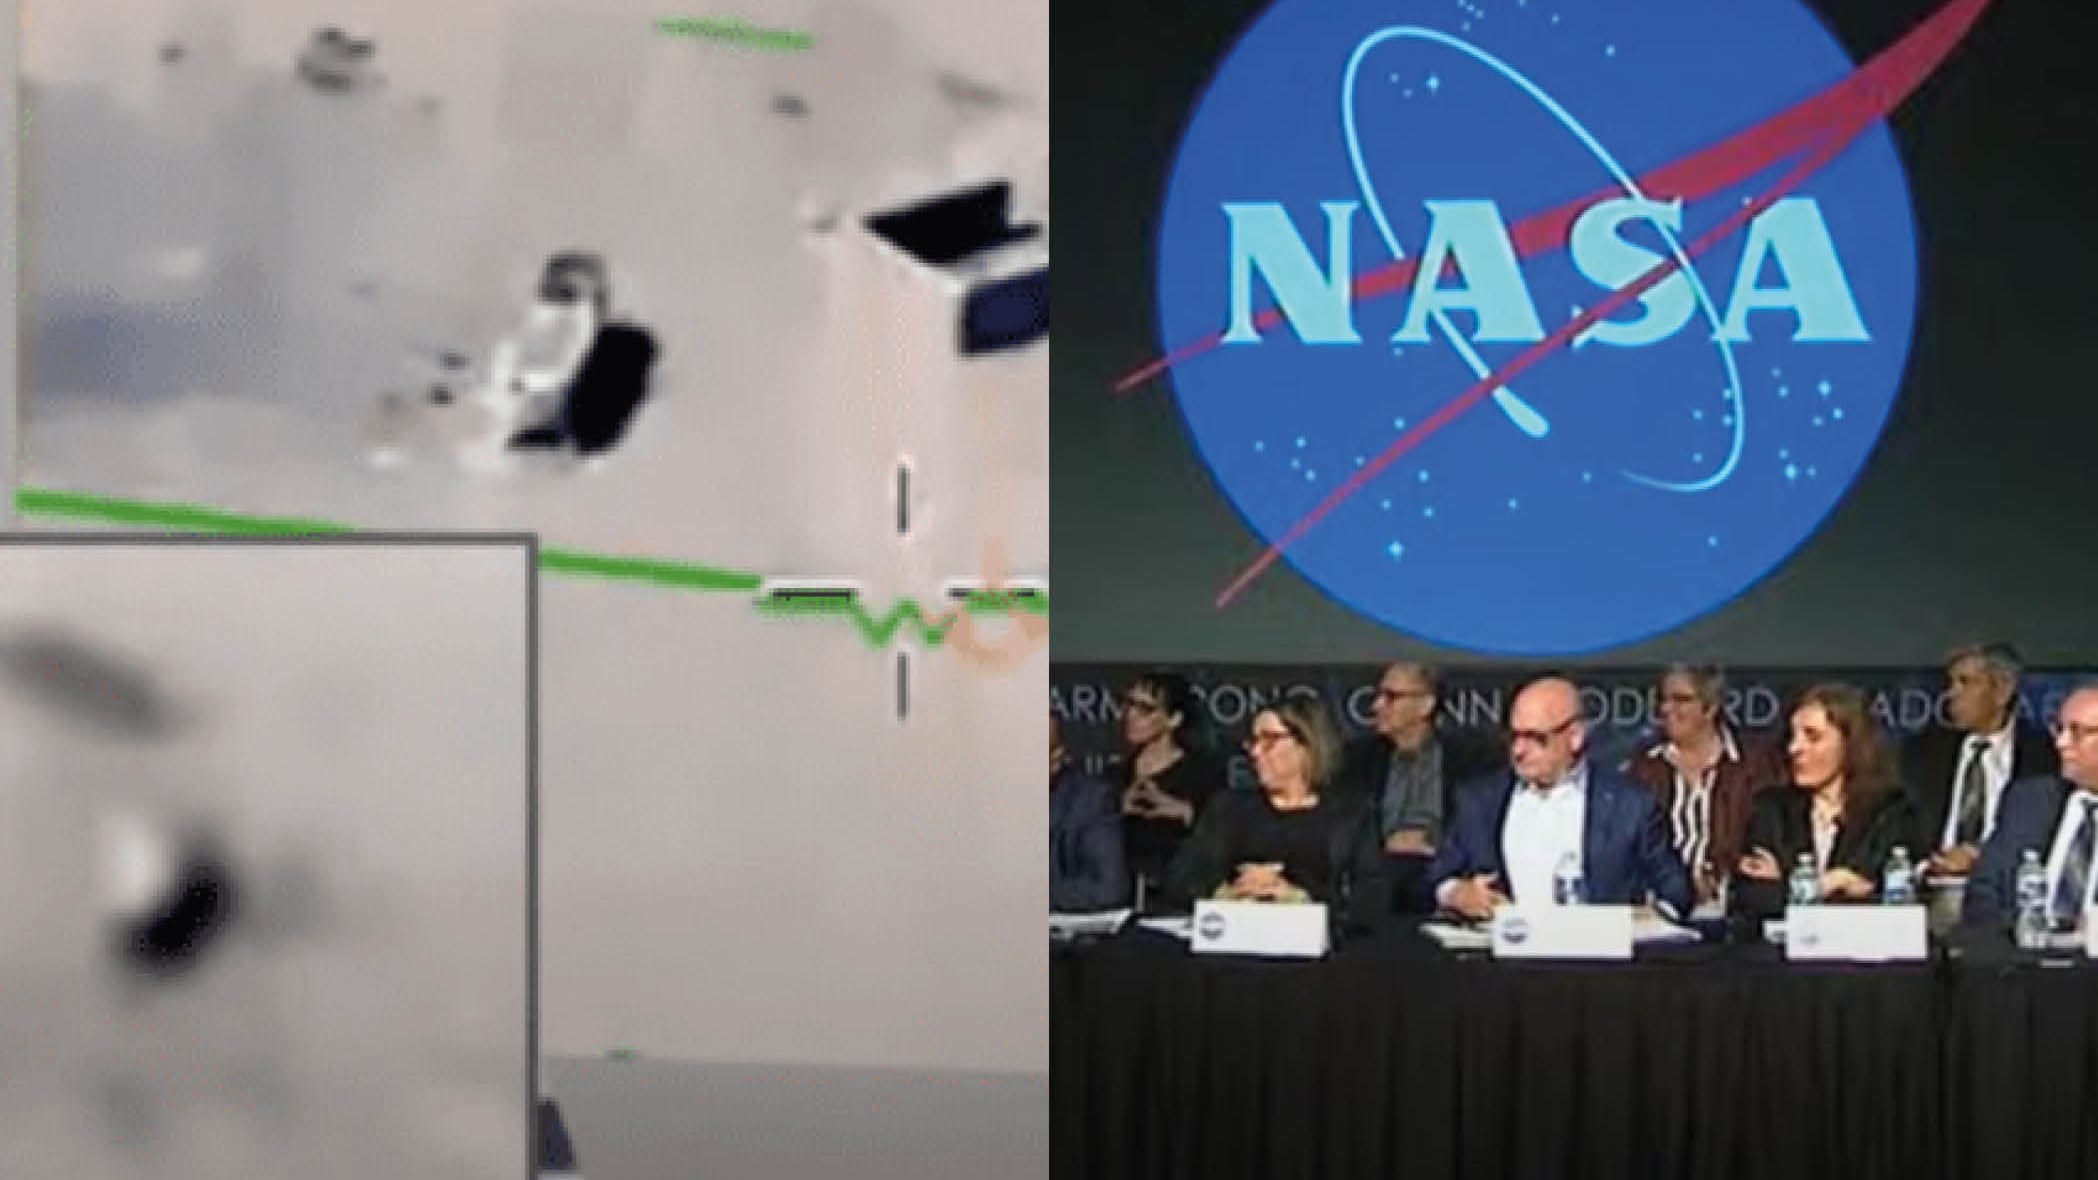 La NASA muestra imágenes de ovnis, estas son sus alarmantes declaraciones